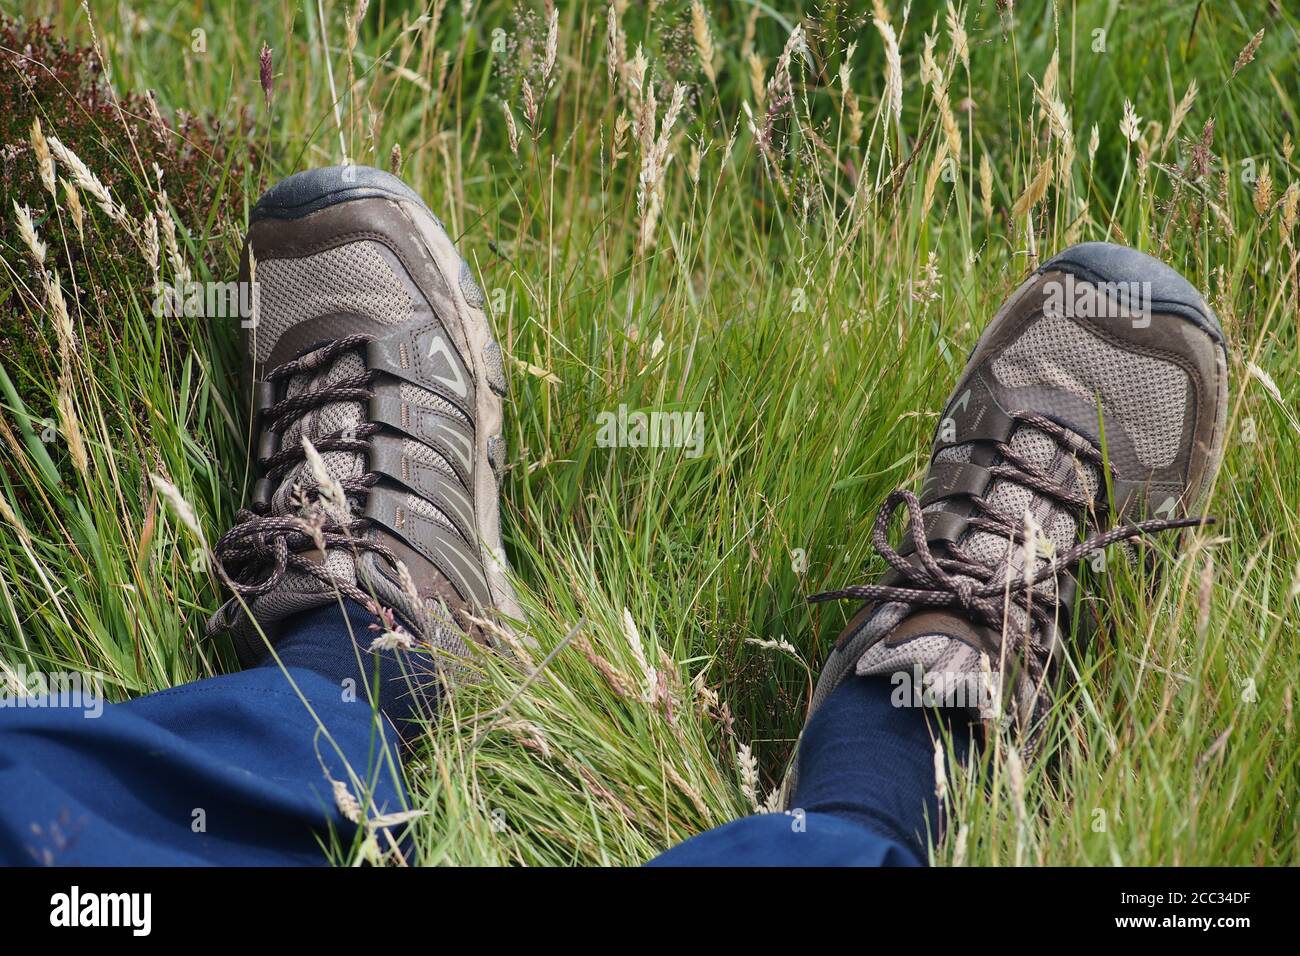 Ein Blick auf die Knöchel und Füße eines Mannes, der in rauem Gras liegt und blaue Hosen, blaue Socken und Wanderschuhe trägt Stockfoto